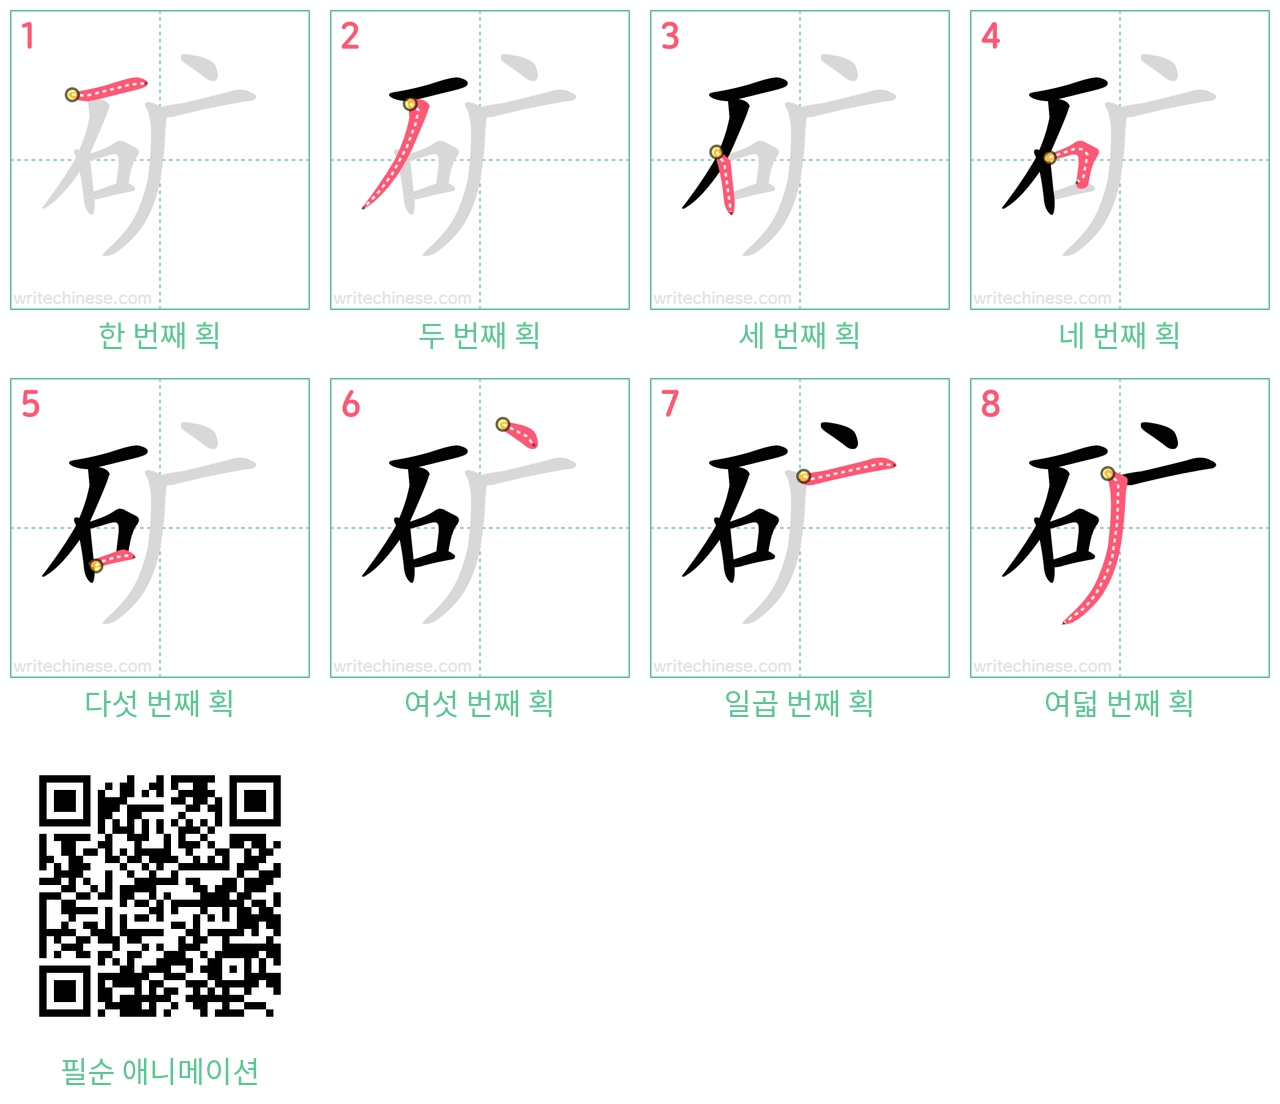 矿 step-by-step stroke order diagrams